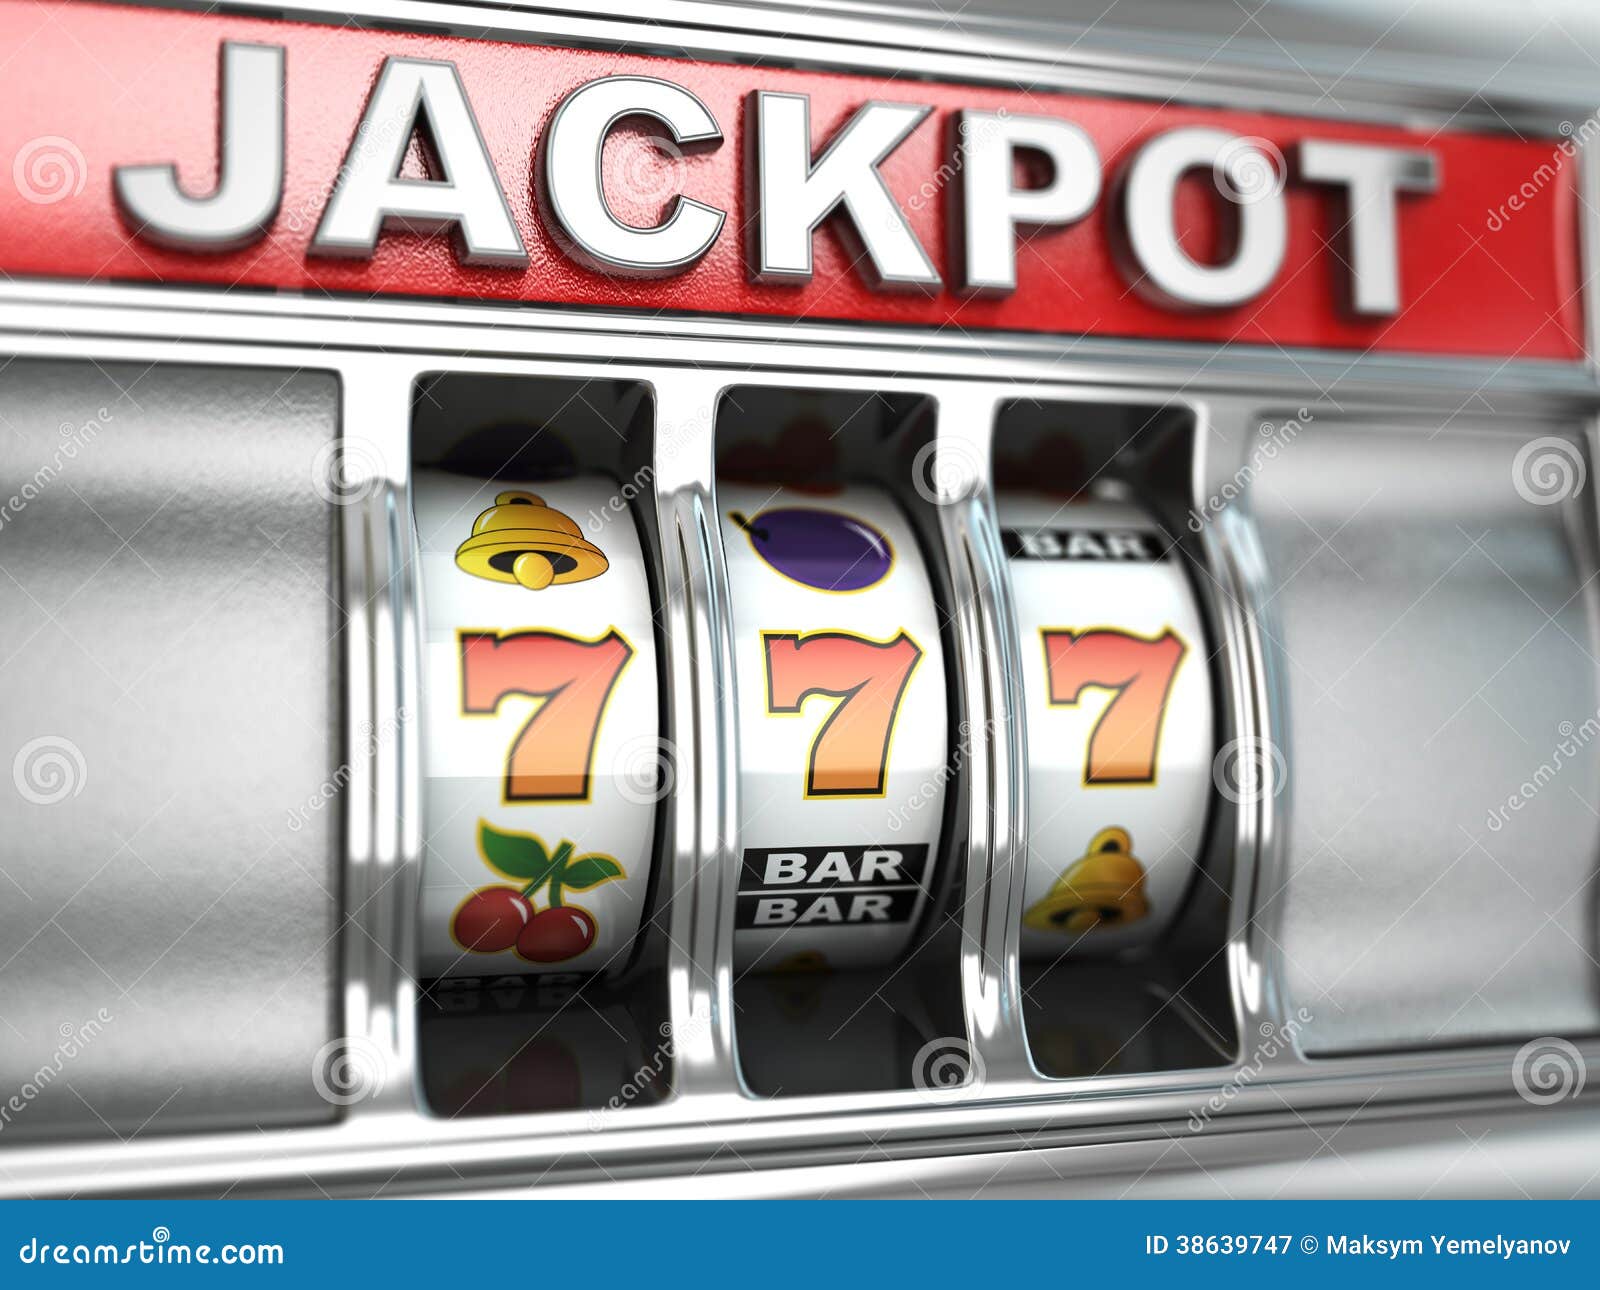 jackpot on slot machine